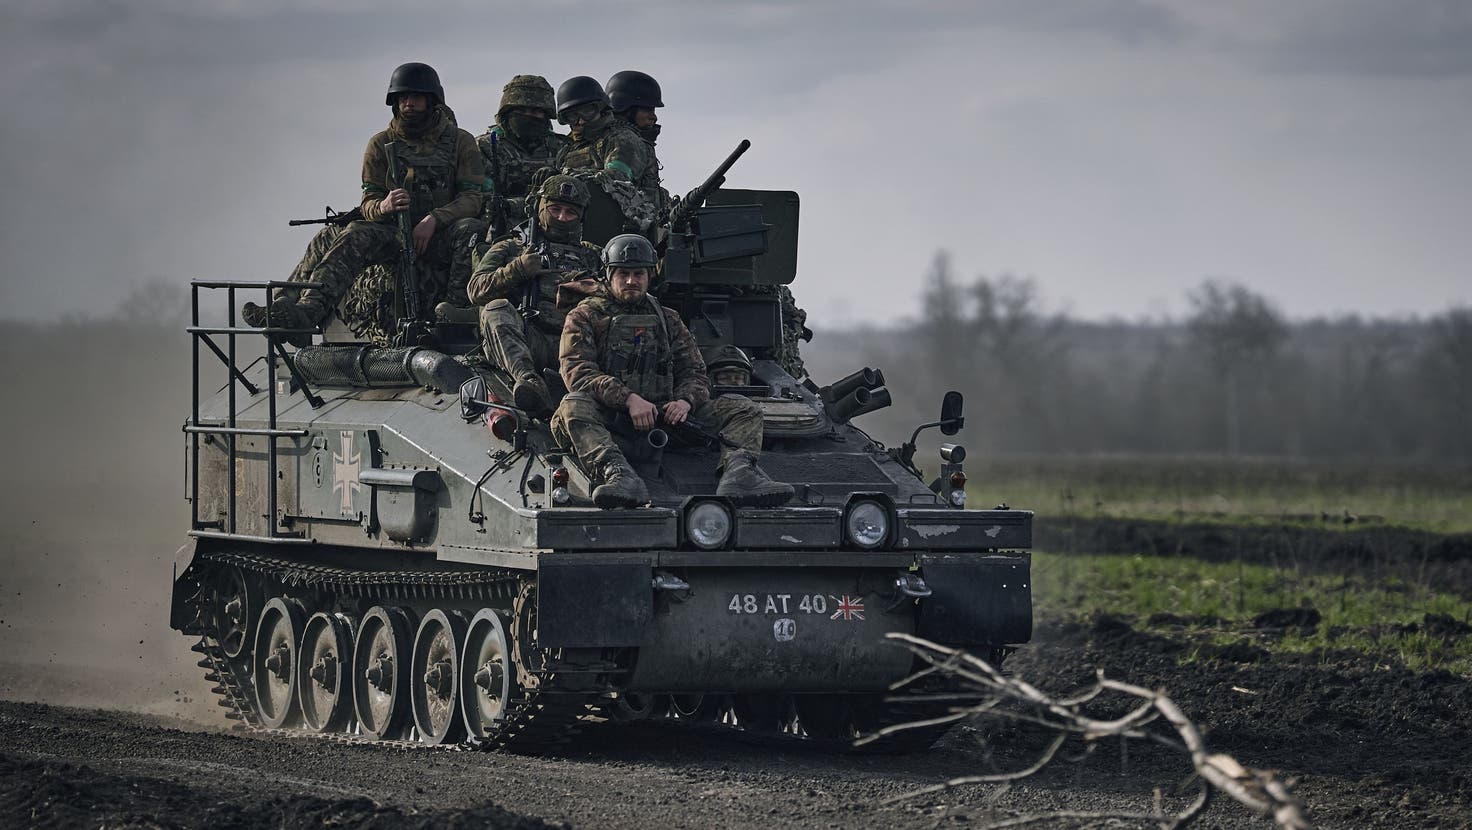 Ukrainisches Militär räumt russischen Teilerfolg in Bachmut ein ++ Moskau und Teheran kritisieren Westen